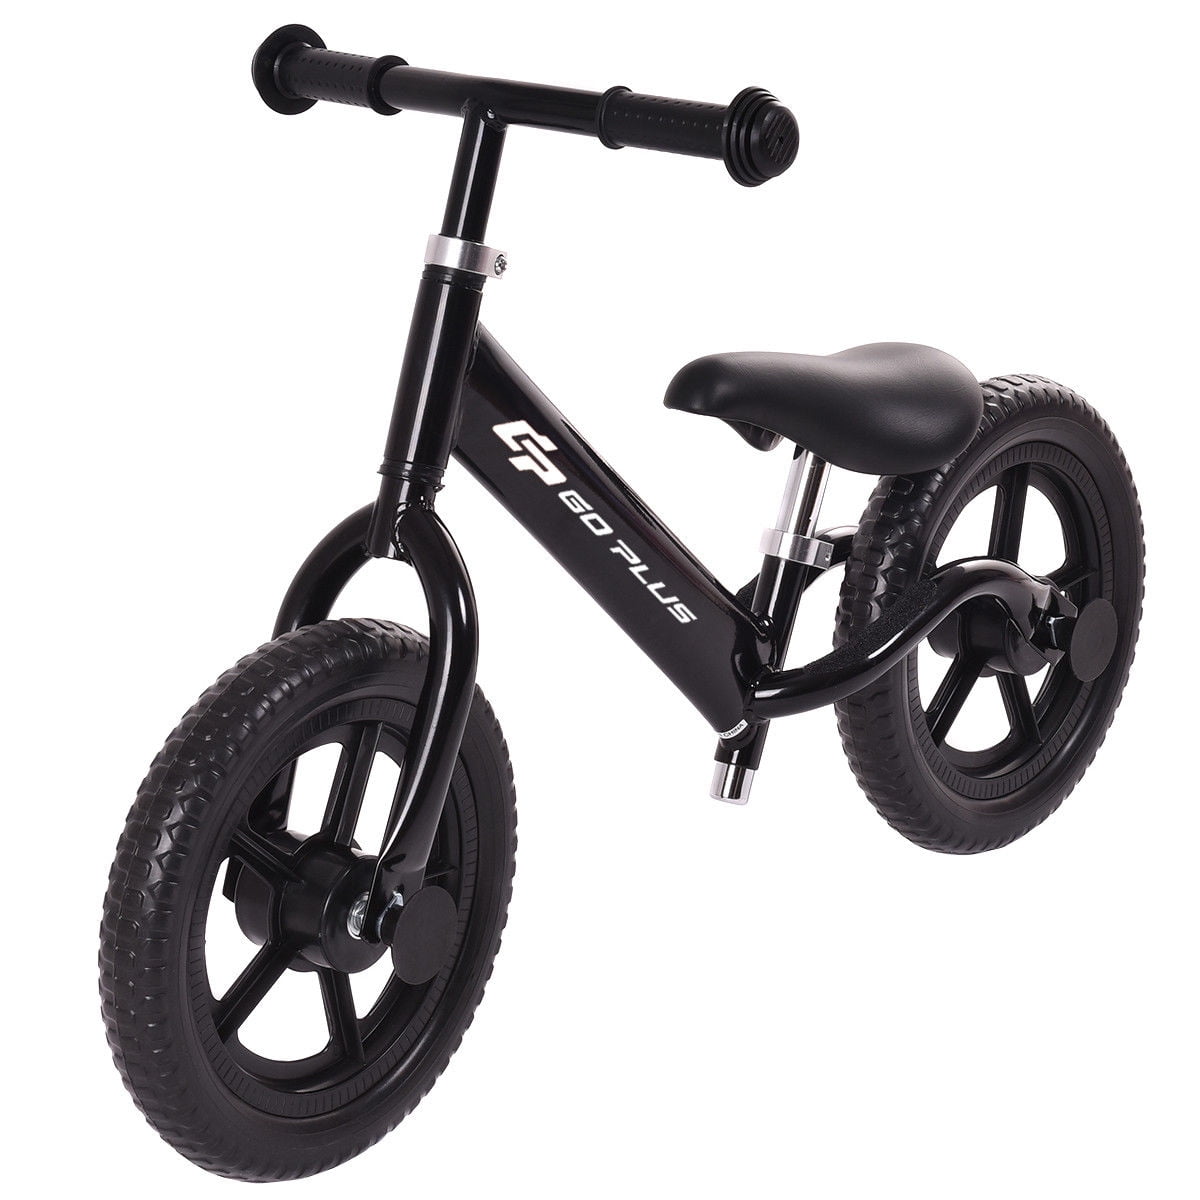 12'' Kids Balance Bike without Pedal Adjustable Handlebar & Seat Lightweight Wa 